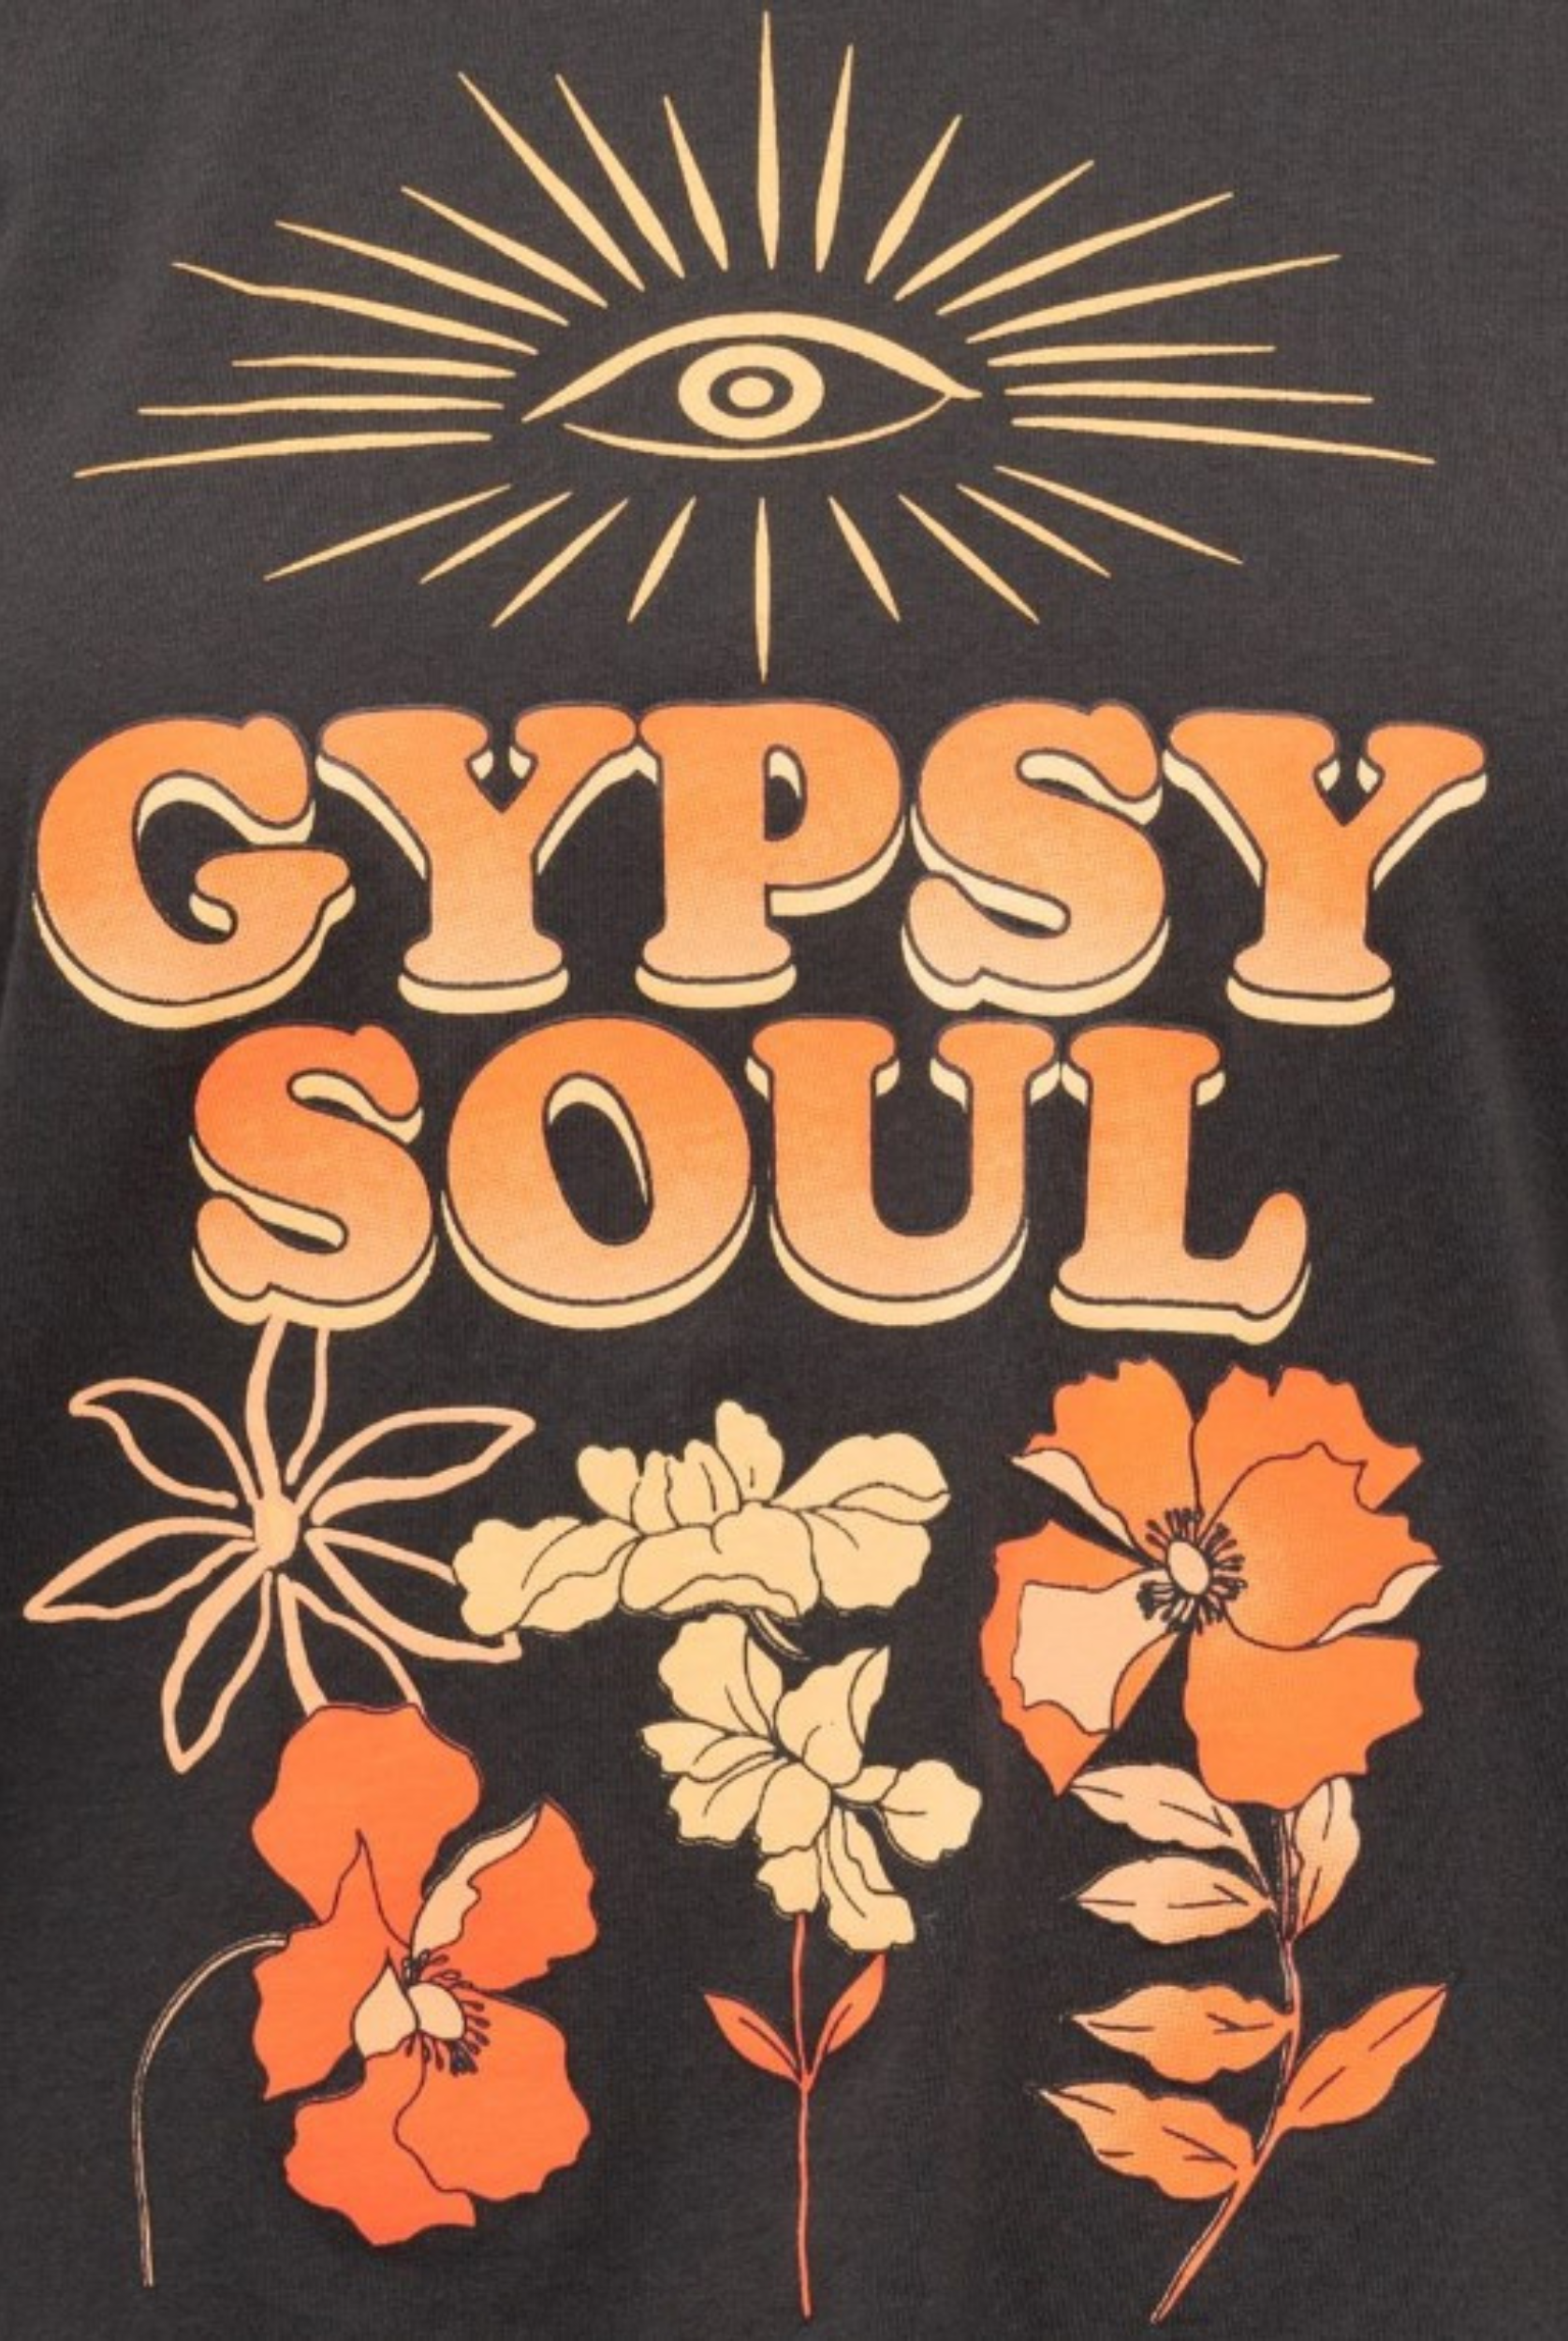 Cotton Tshirt with Gypsy Soul Motif